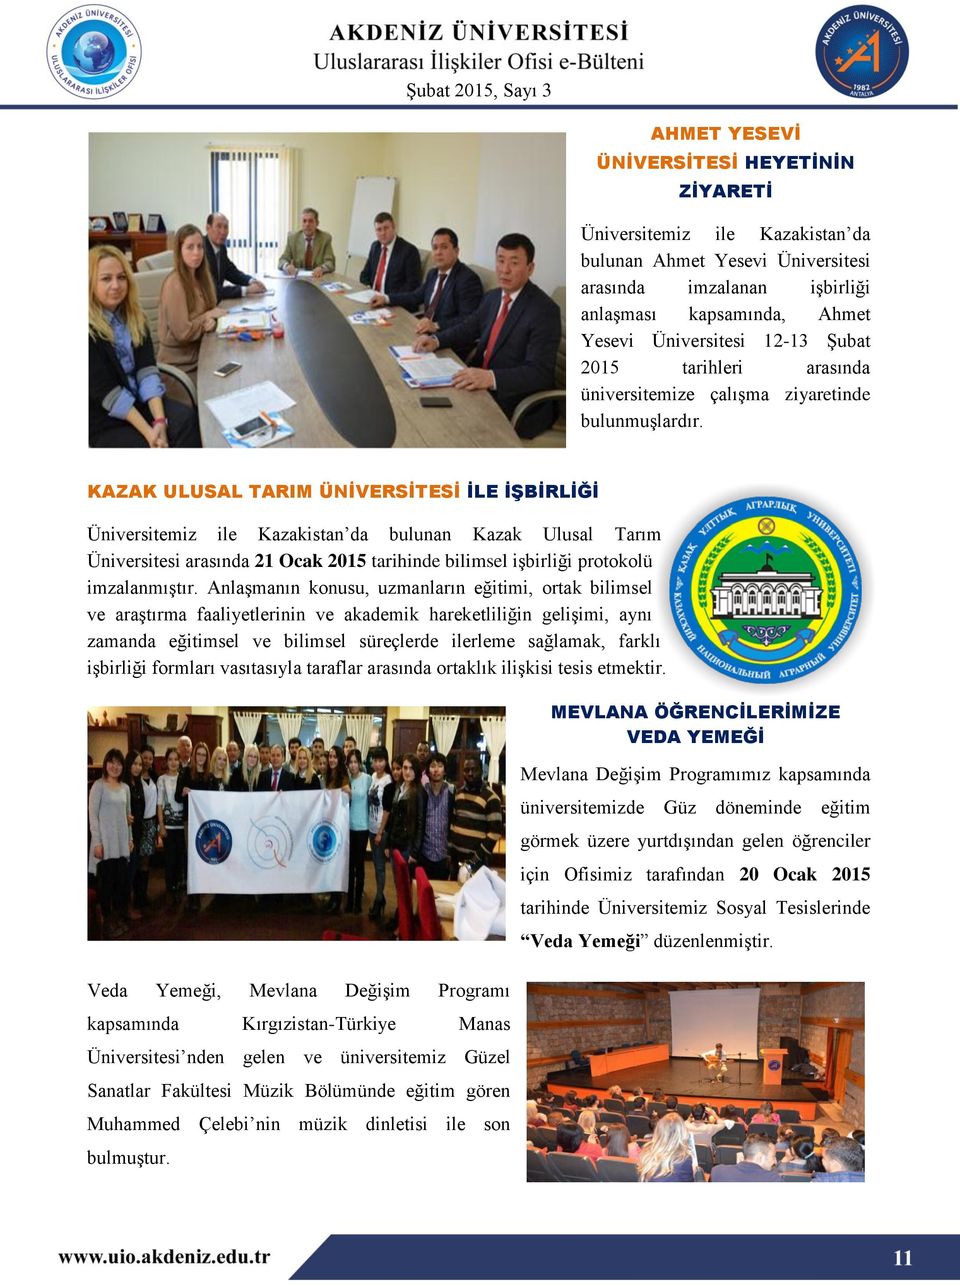 KAZAK ULUSAL TARIM ÜNİVERSİTESİ İLE İŞBİRLİĞİ Üniversitemiz ile Kazakistan da bulunan Kazak Ulusal Tarım Üniversitesi arasında 21 Ocak 2015 tarihinde bilimsel işbirliği protokolü imzalanmıştır.